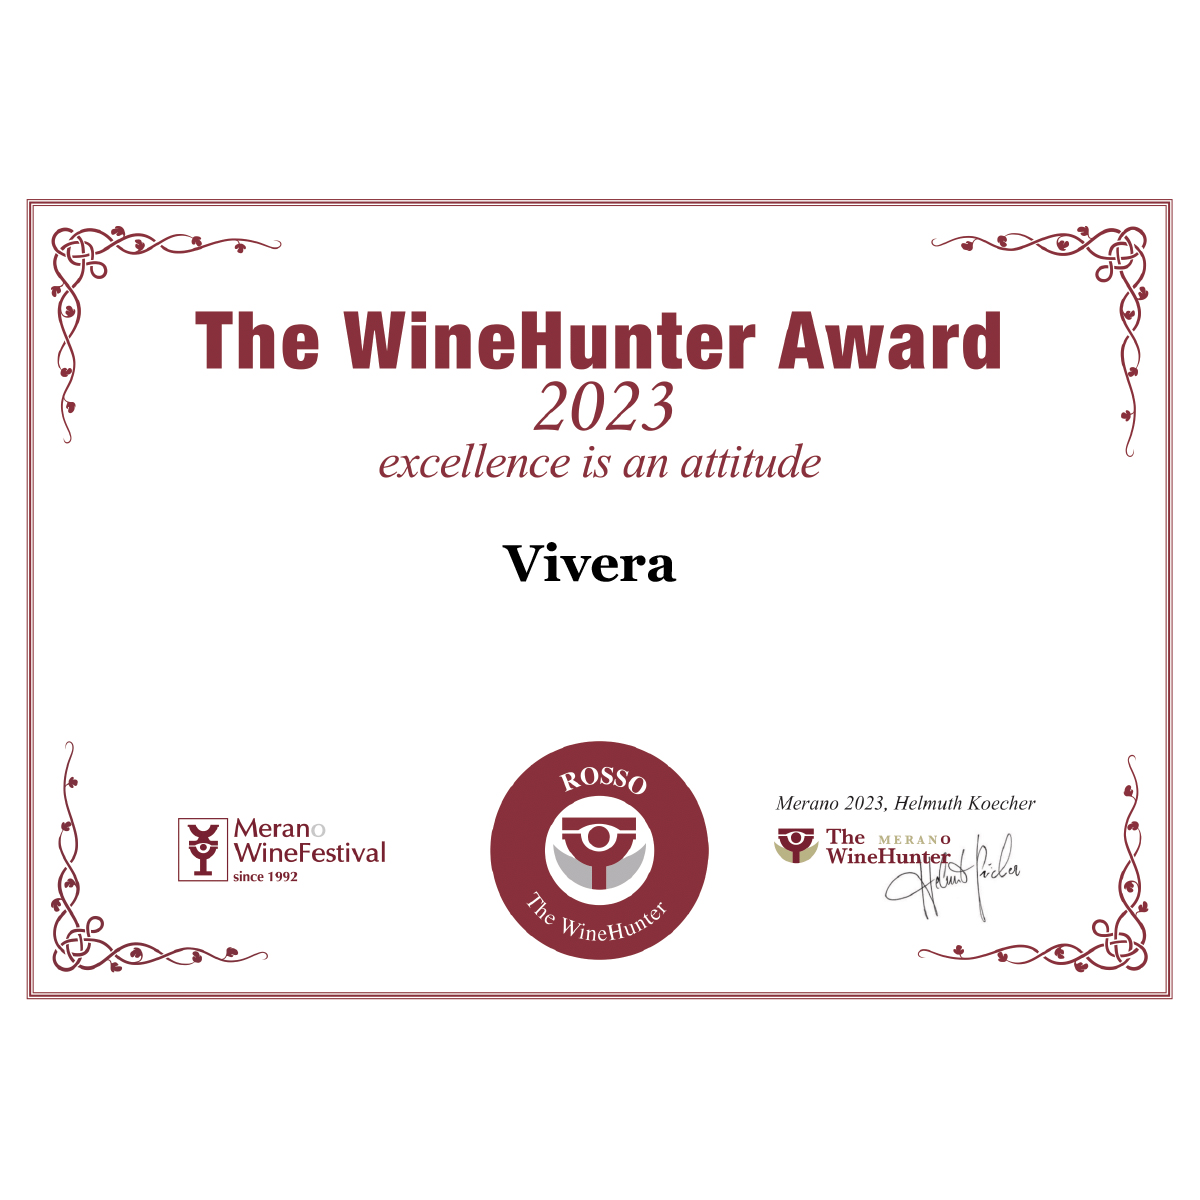 The WineHunter Award 2023